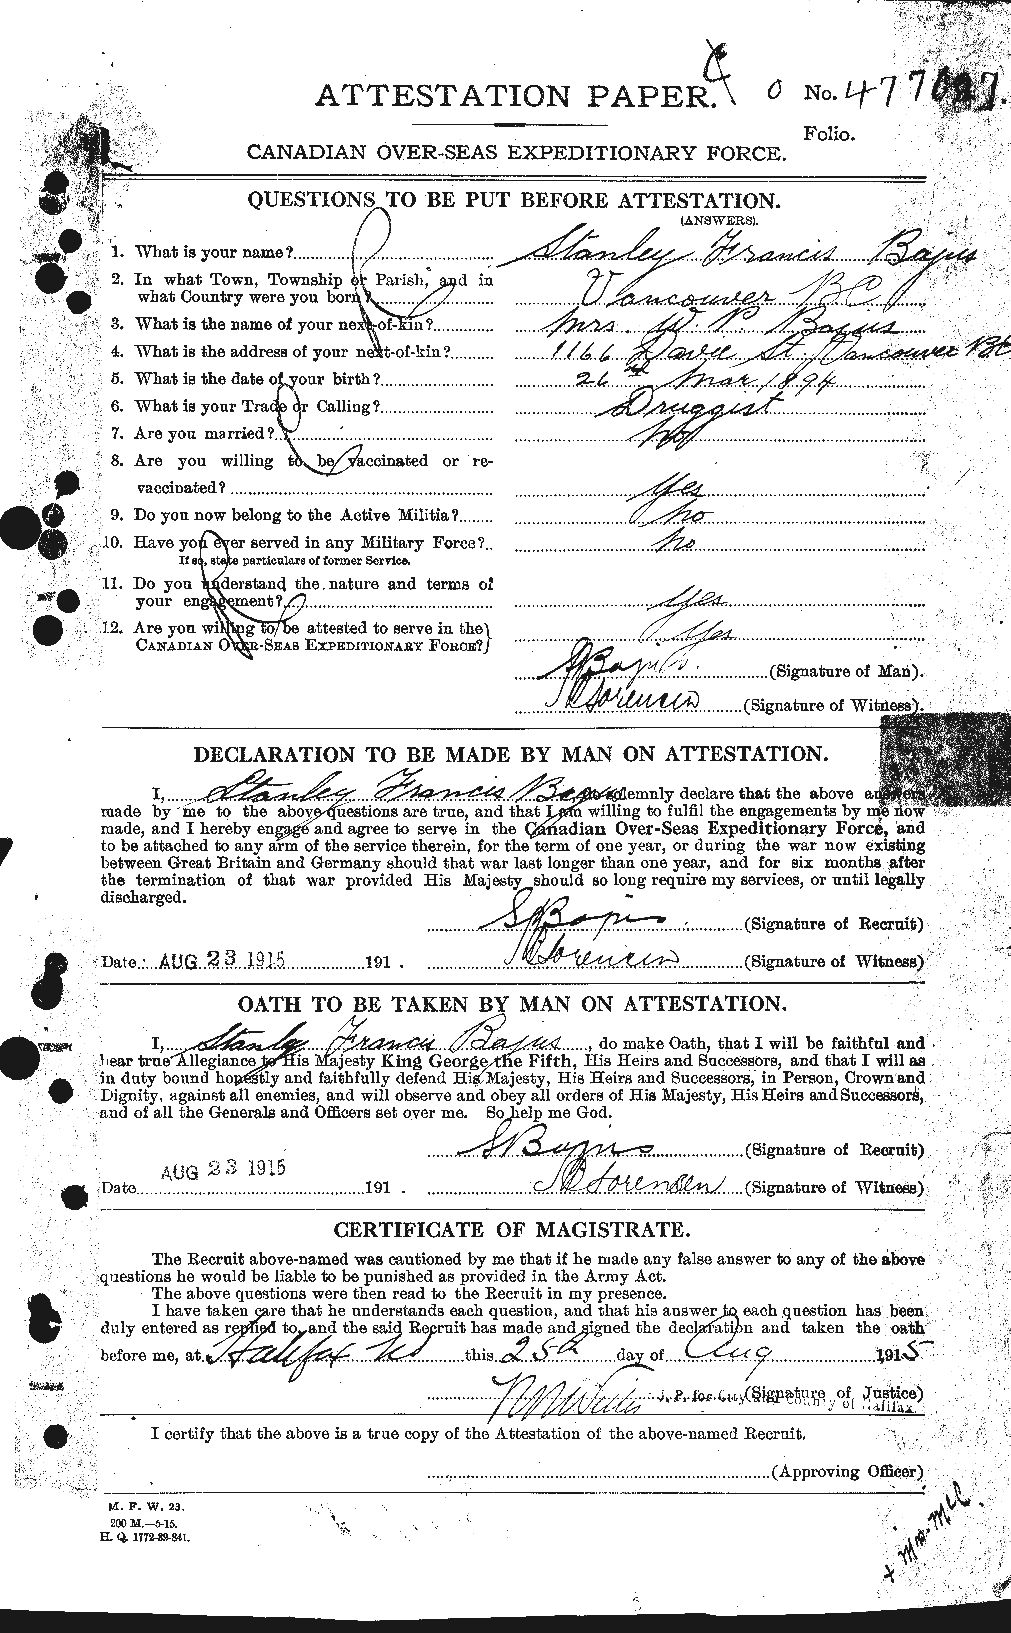 Dossiers du Personnel de la Première Guerre mondiale - CEC 226497a